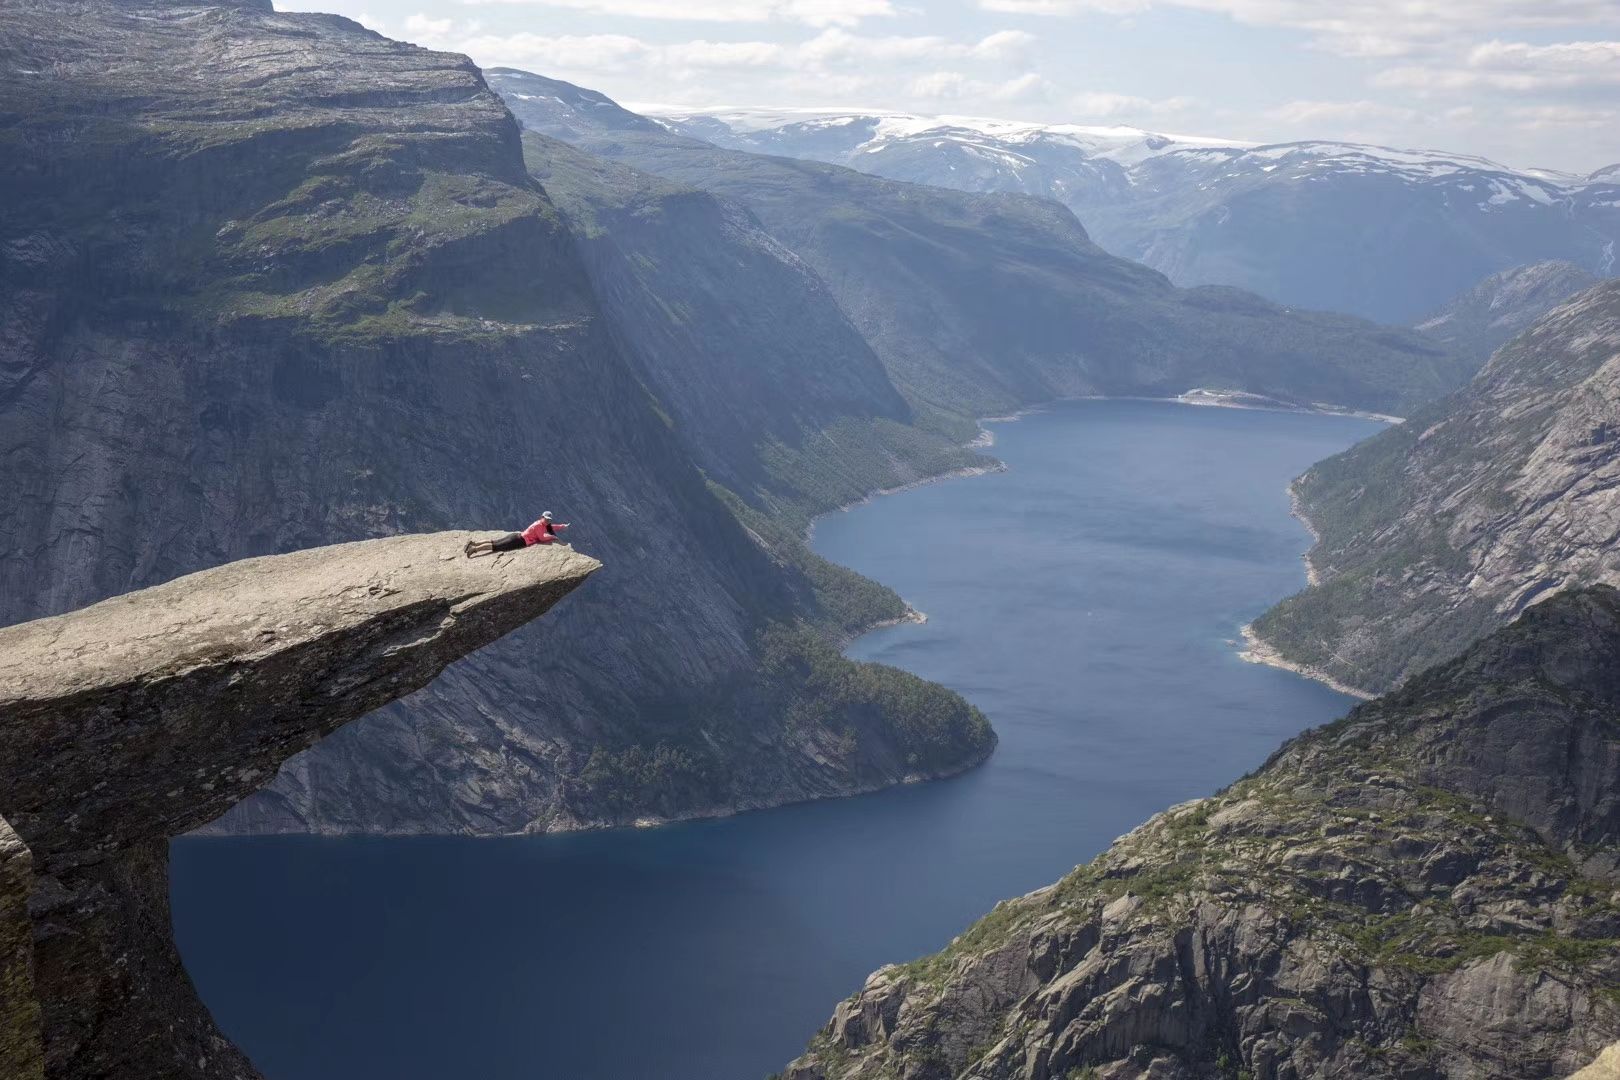 挪威山妖舌，挪威一处知名景点，形状酷似挪威山妖的舌头而得名。这个景点因为比较隐秘，去的游客非常少，算